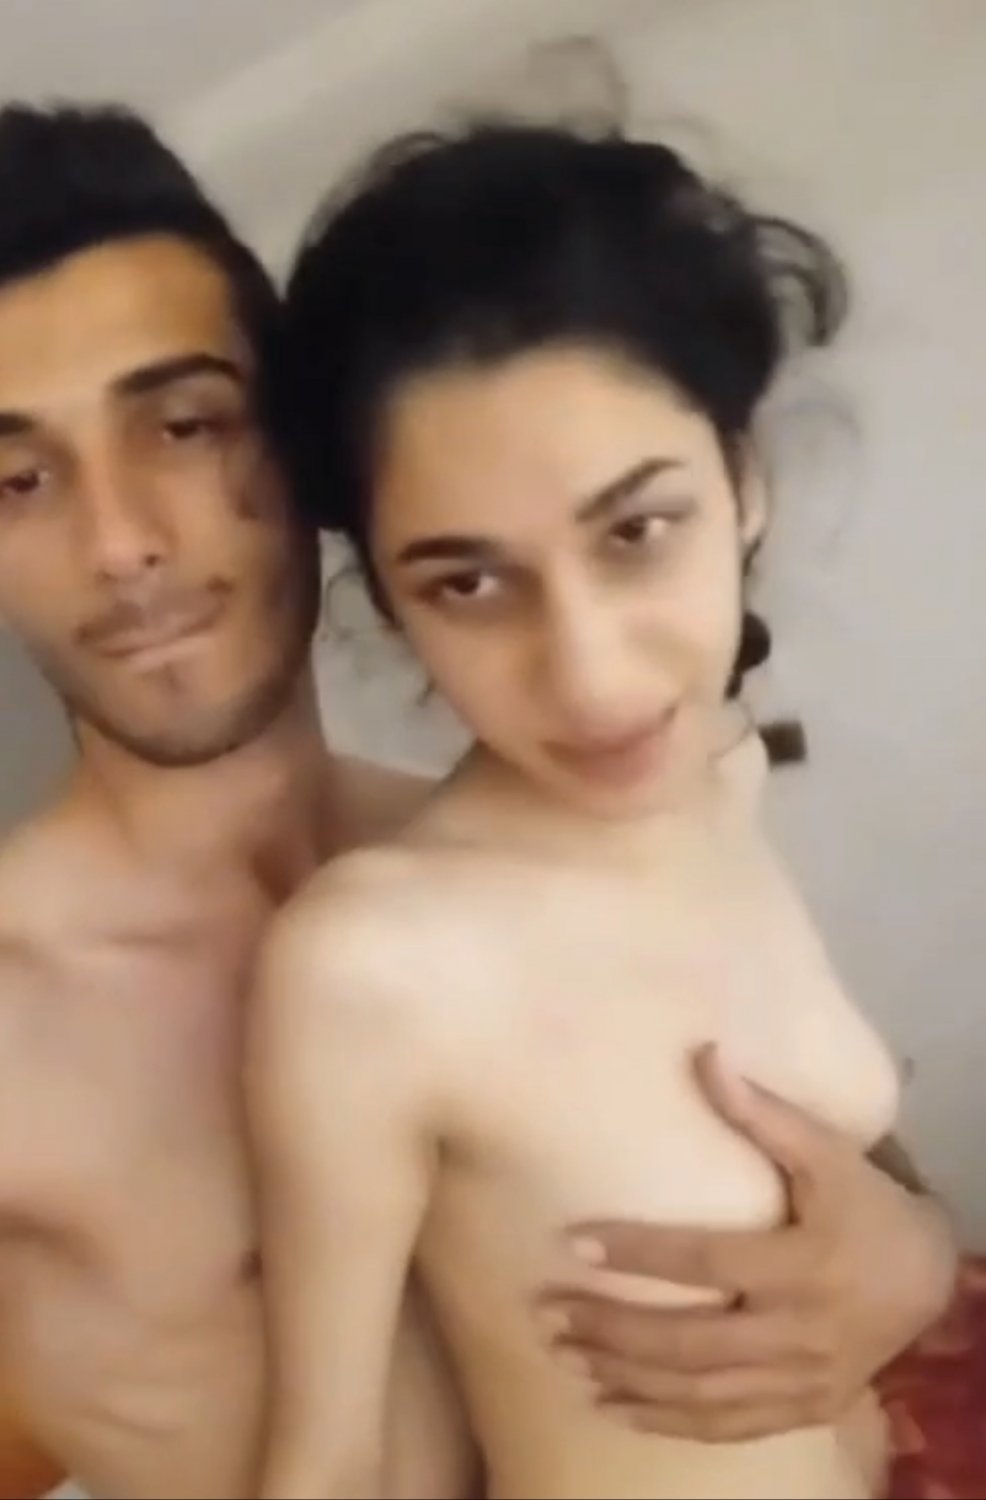 Skinny Iranian Porn - Skinny Persian couple sextape - Porn Videos & Photos - EroMe